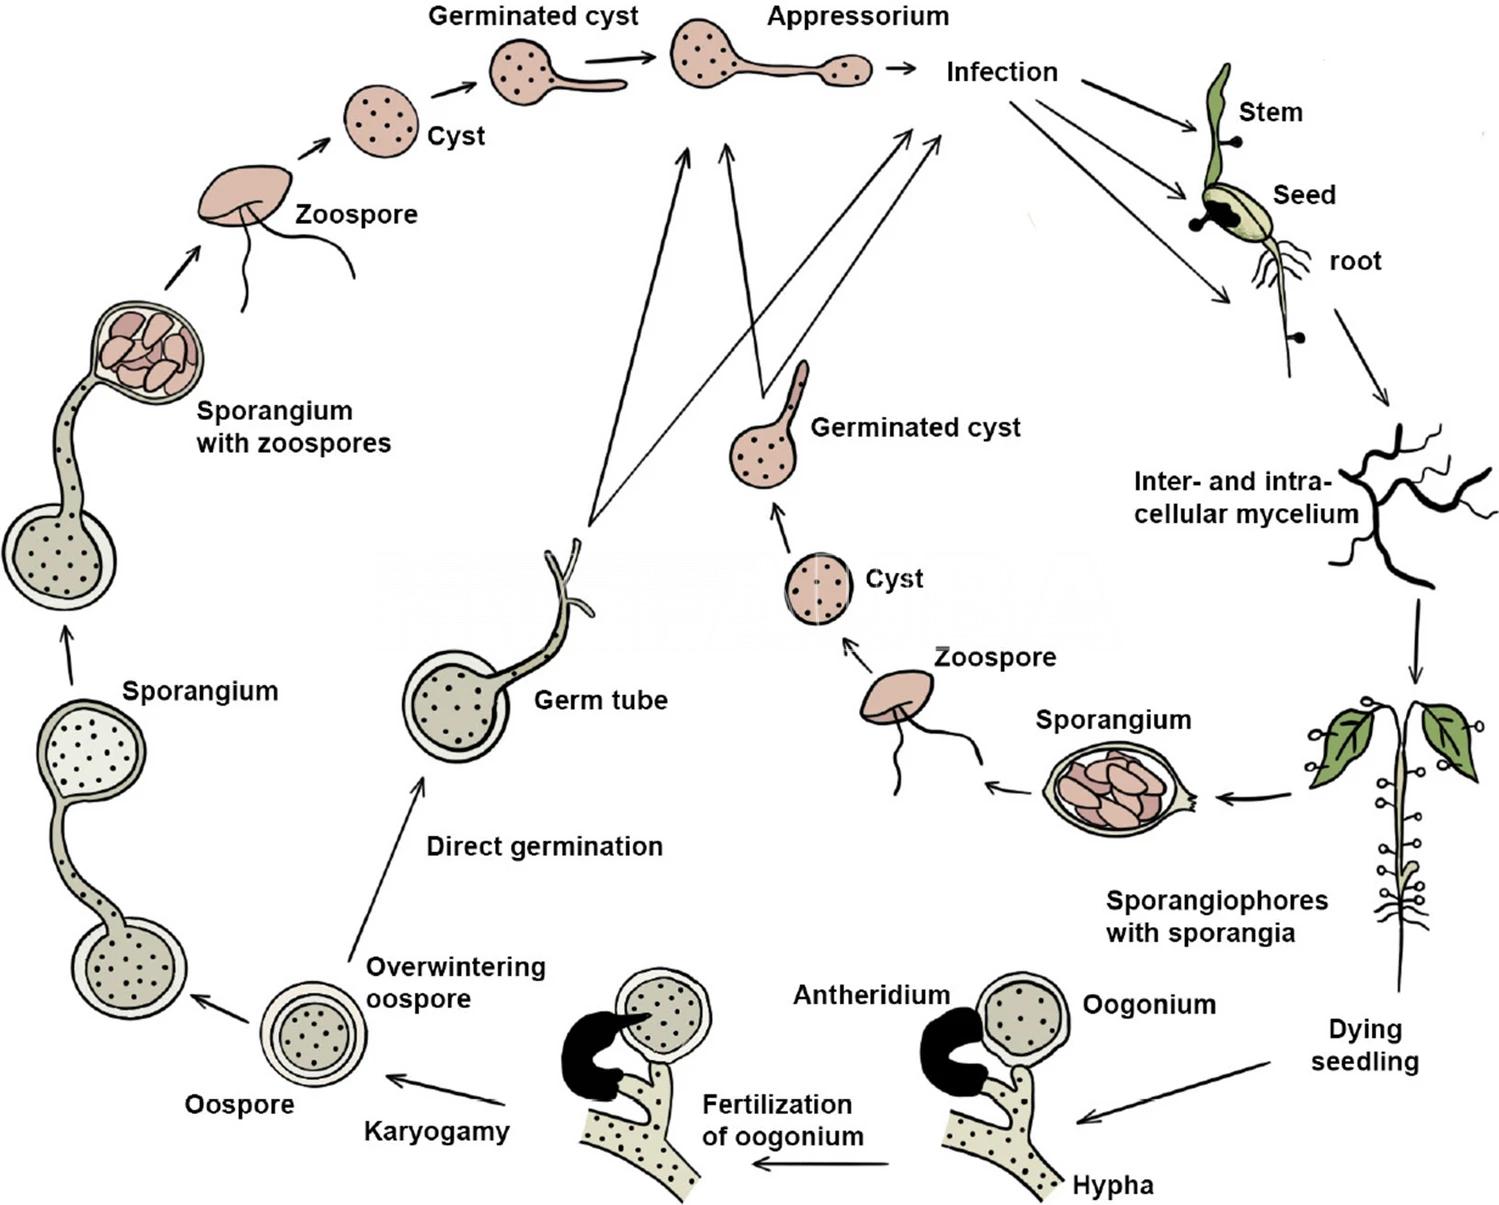 Ciclo biológico de Pythium spp. El ciclo agronómico se considera monocíclico. Autores: West et al. 2003; Jayawardena et al., 2020.